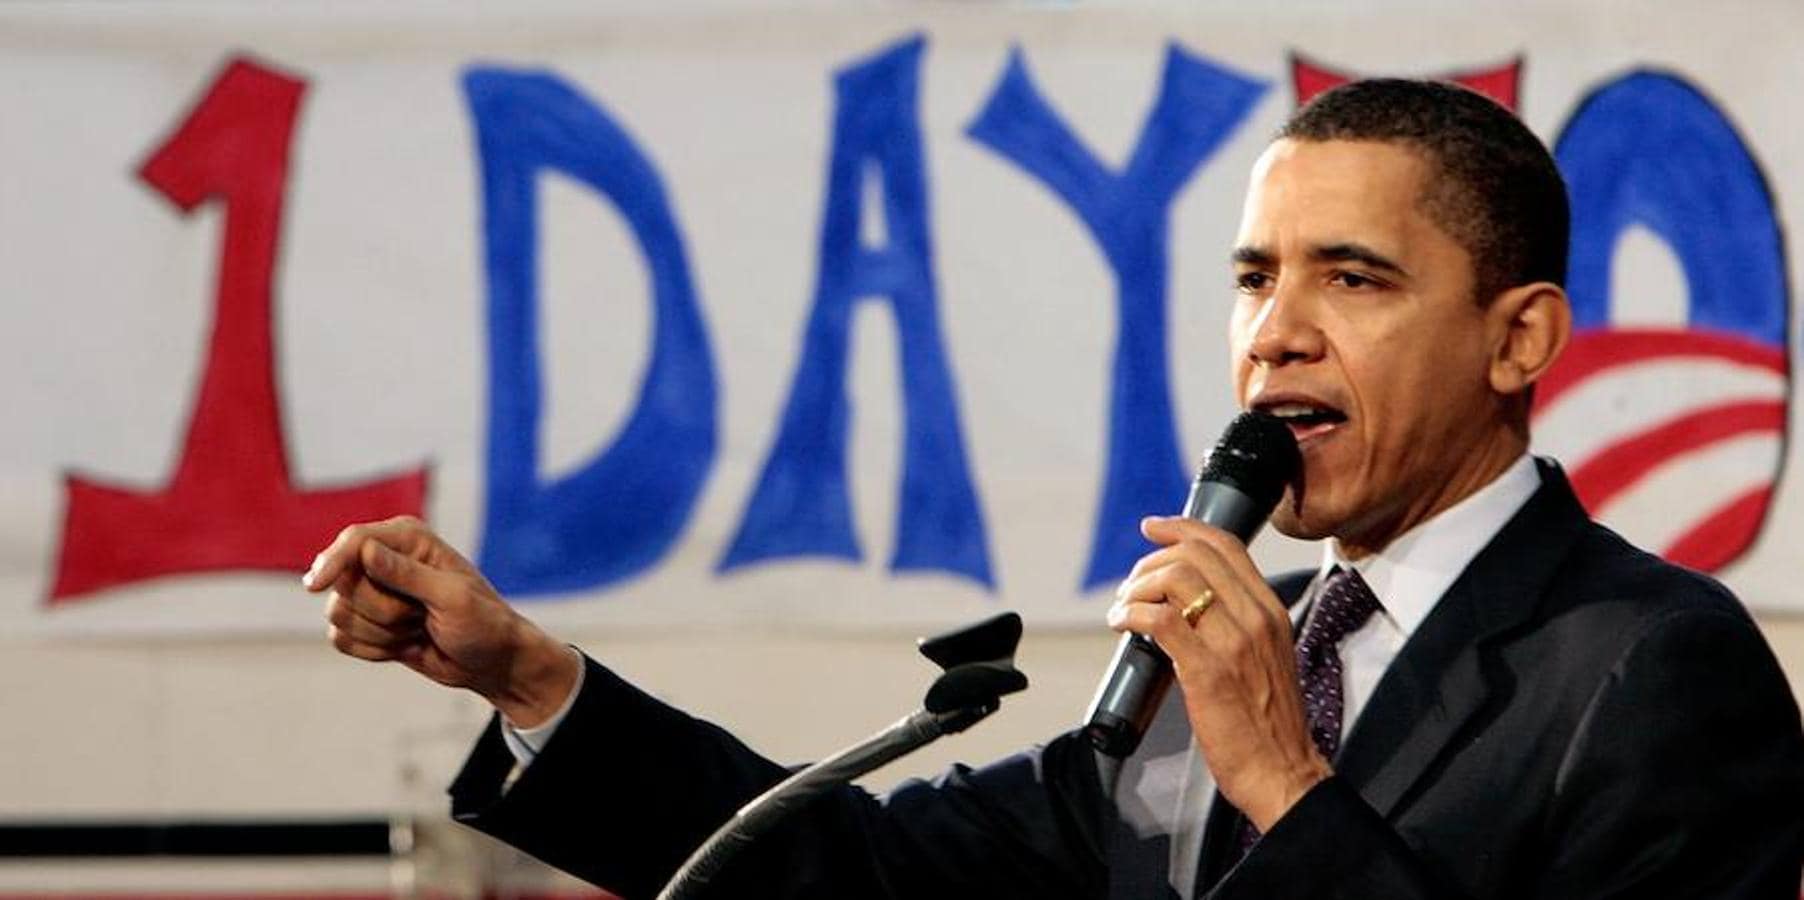 Barack Obama: los sueños rotos del «Yes, We can»